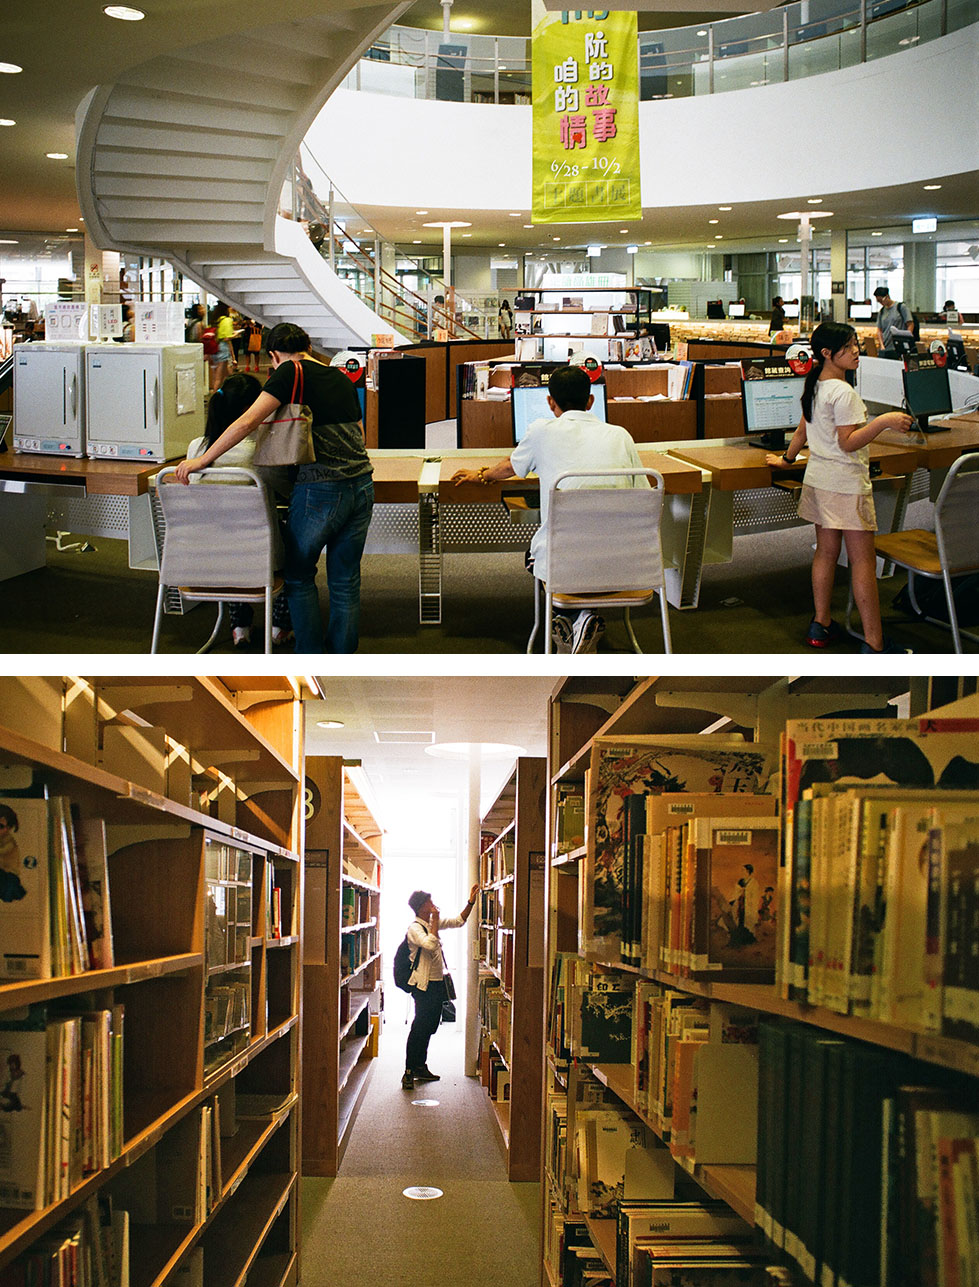 上：高雄市立圖書總館經常坐無虛席。下：許多愛書人穿梭在書架間，信手從書架上取下一、兩本書。（周書正·攝影）